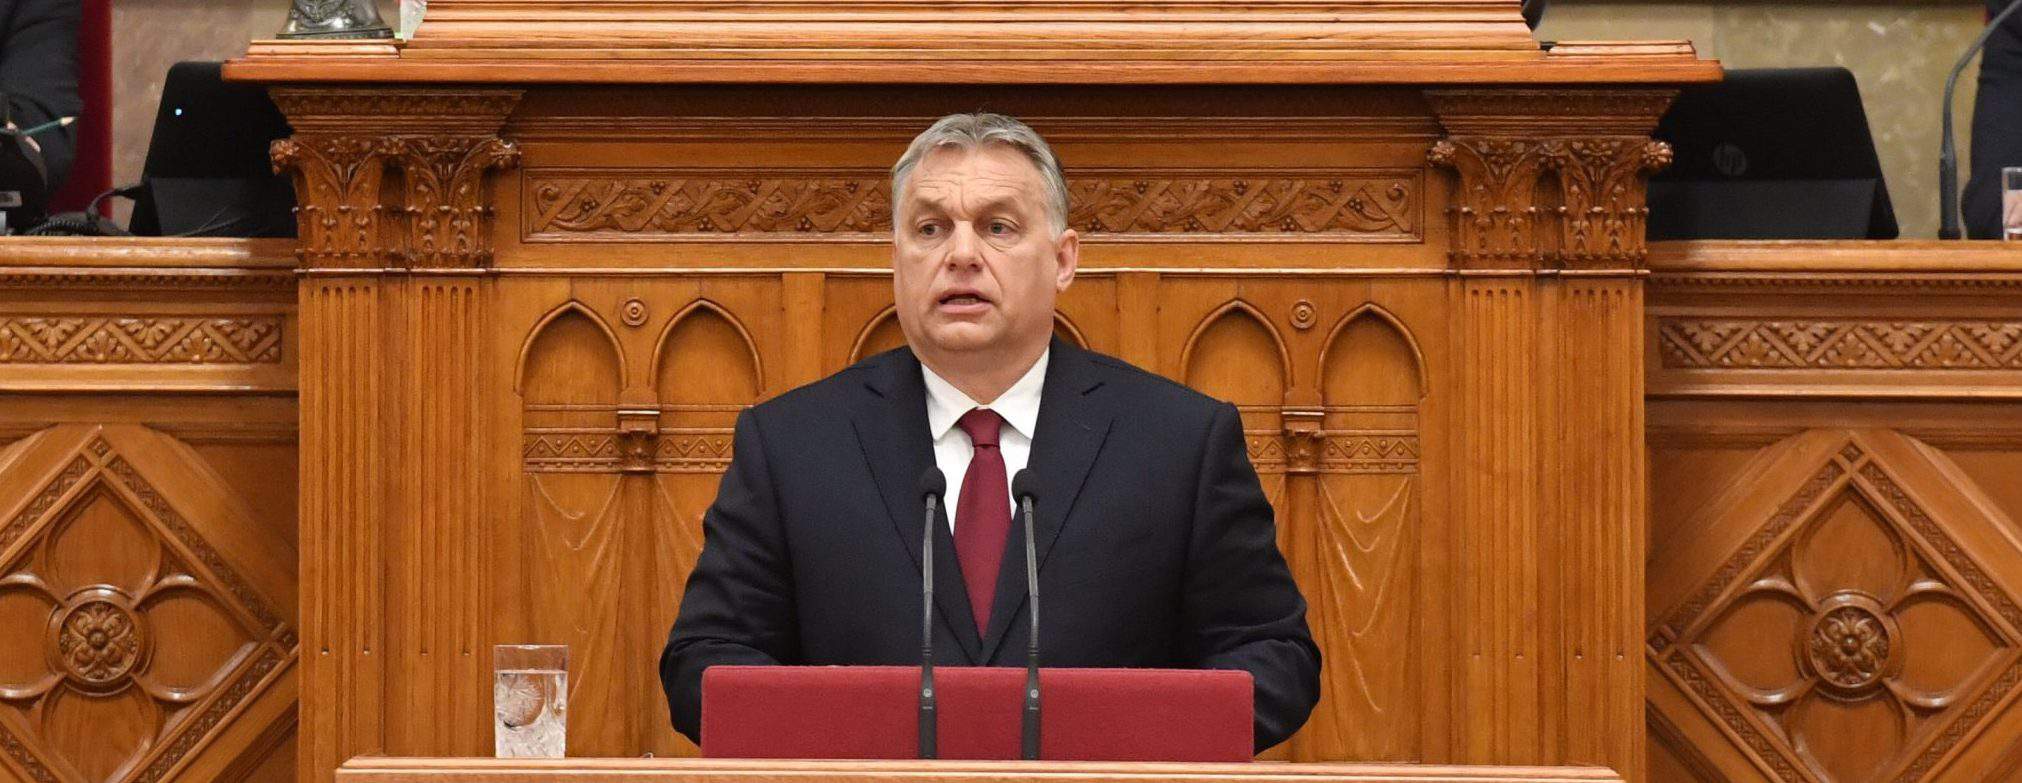 PM Orbán Hungary